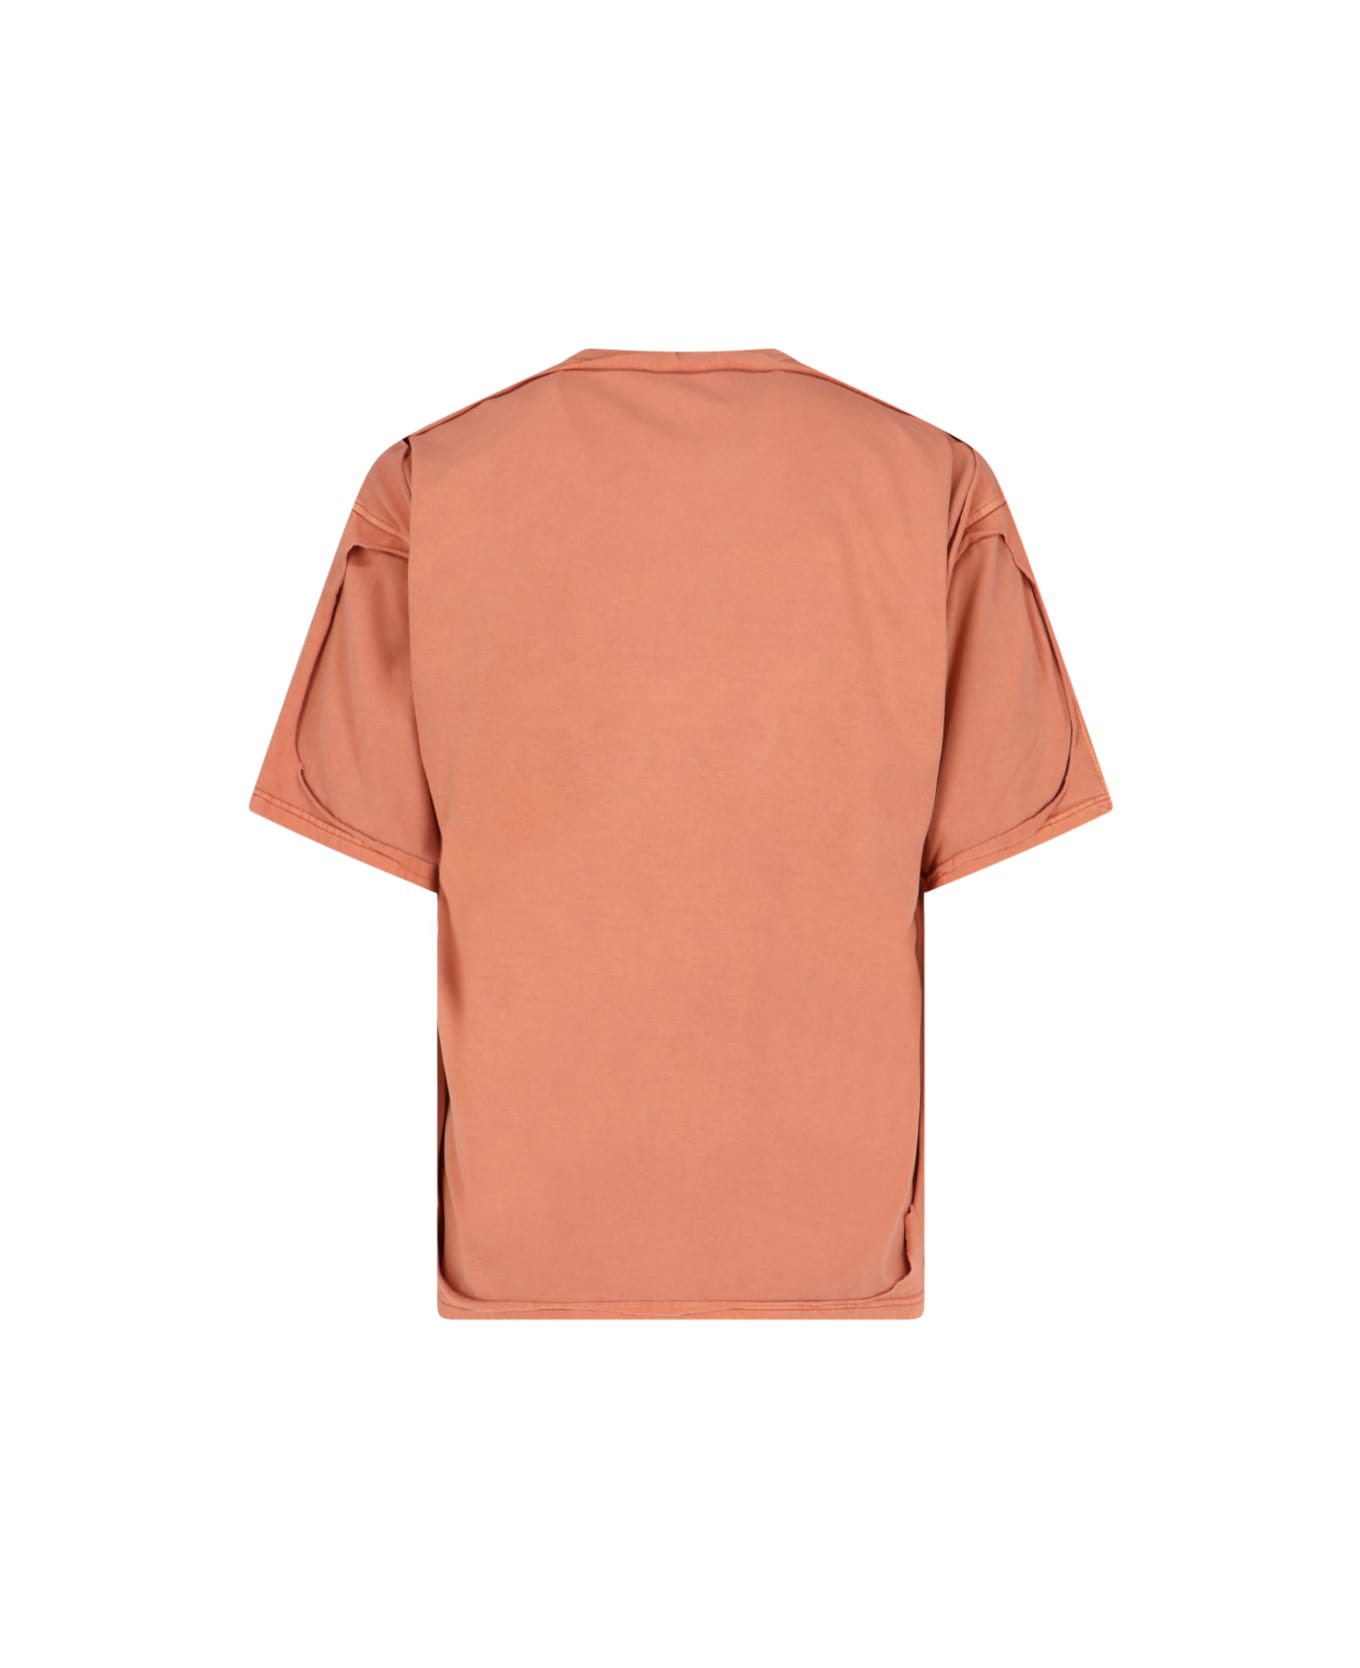 Diesel 't-box-dbl' T-shirt - Orange